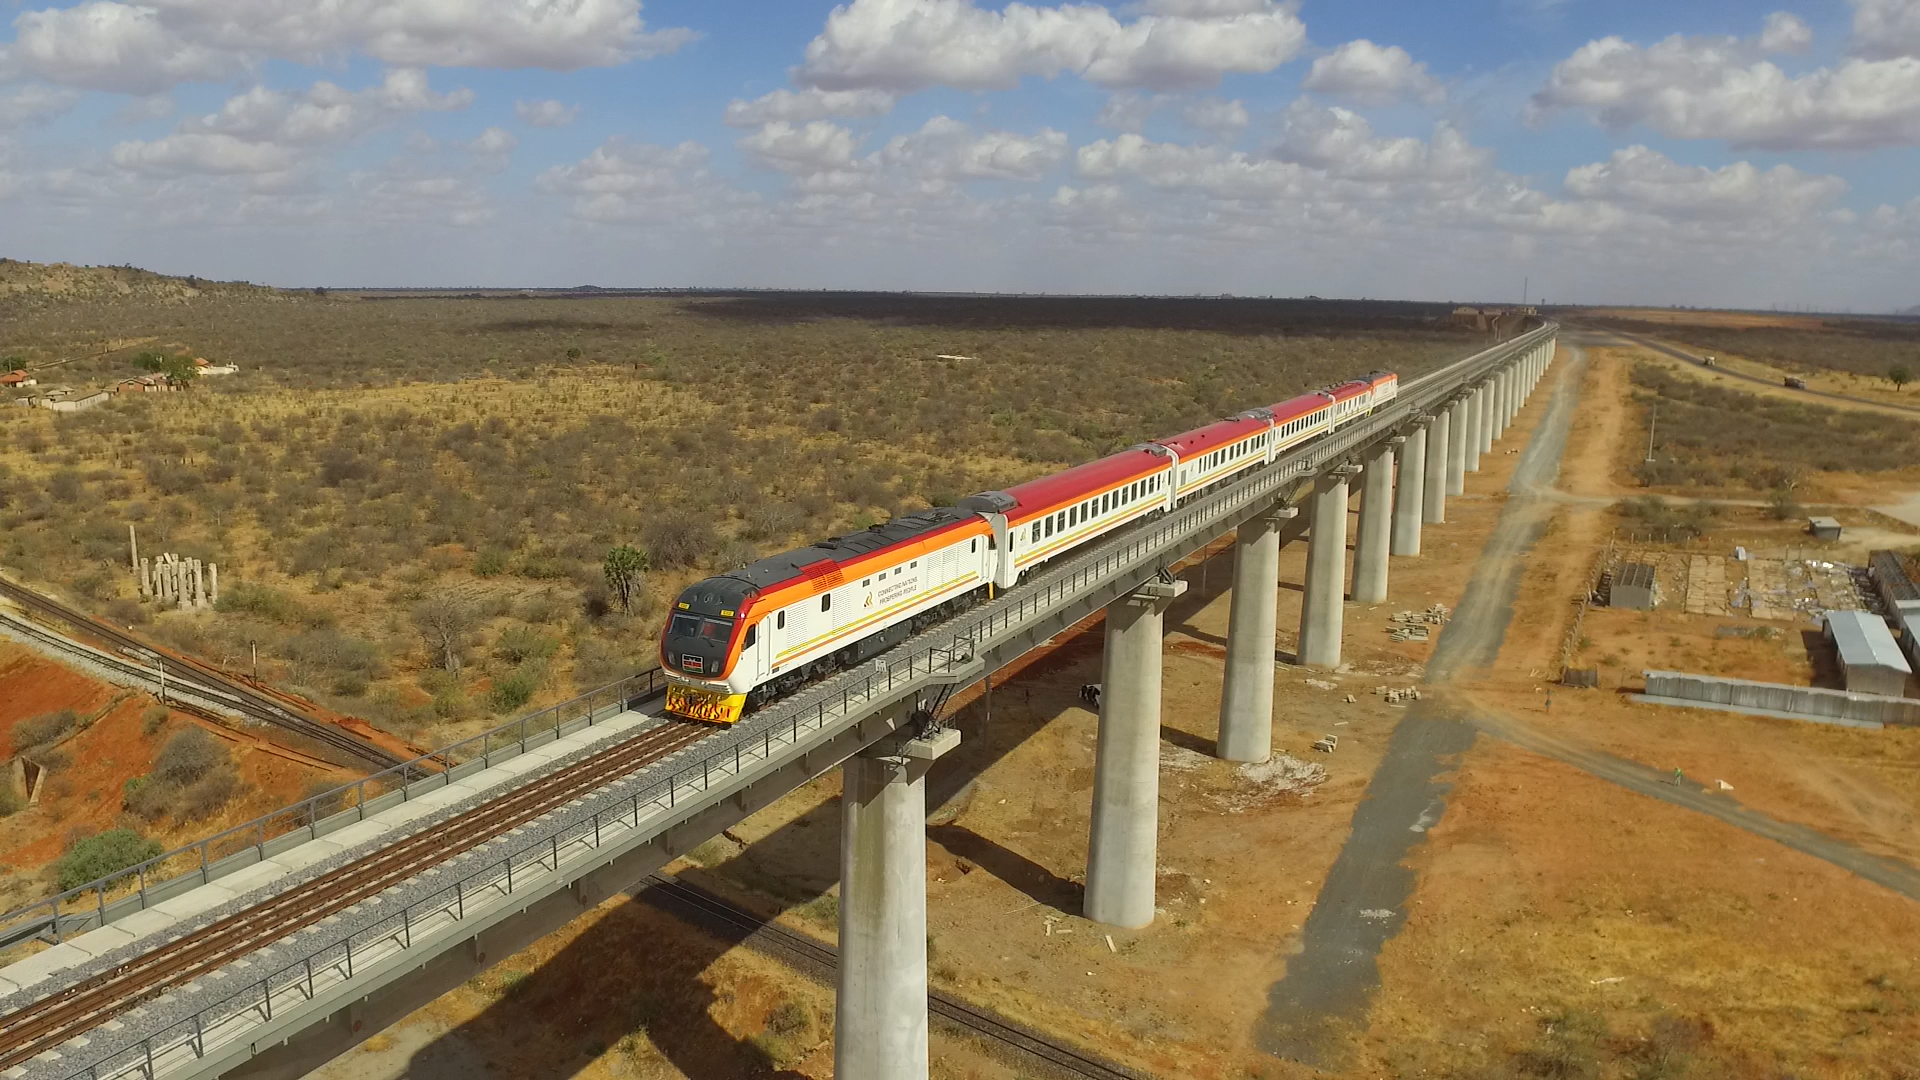 launches overnight Nairobi - Mombasa service - International Railway Journal